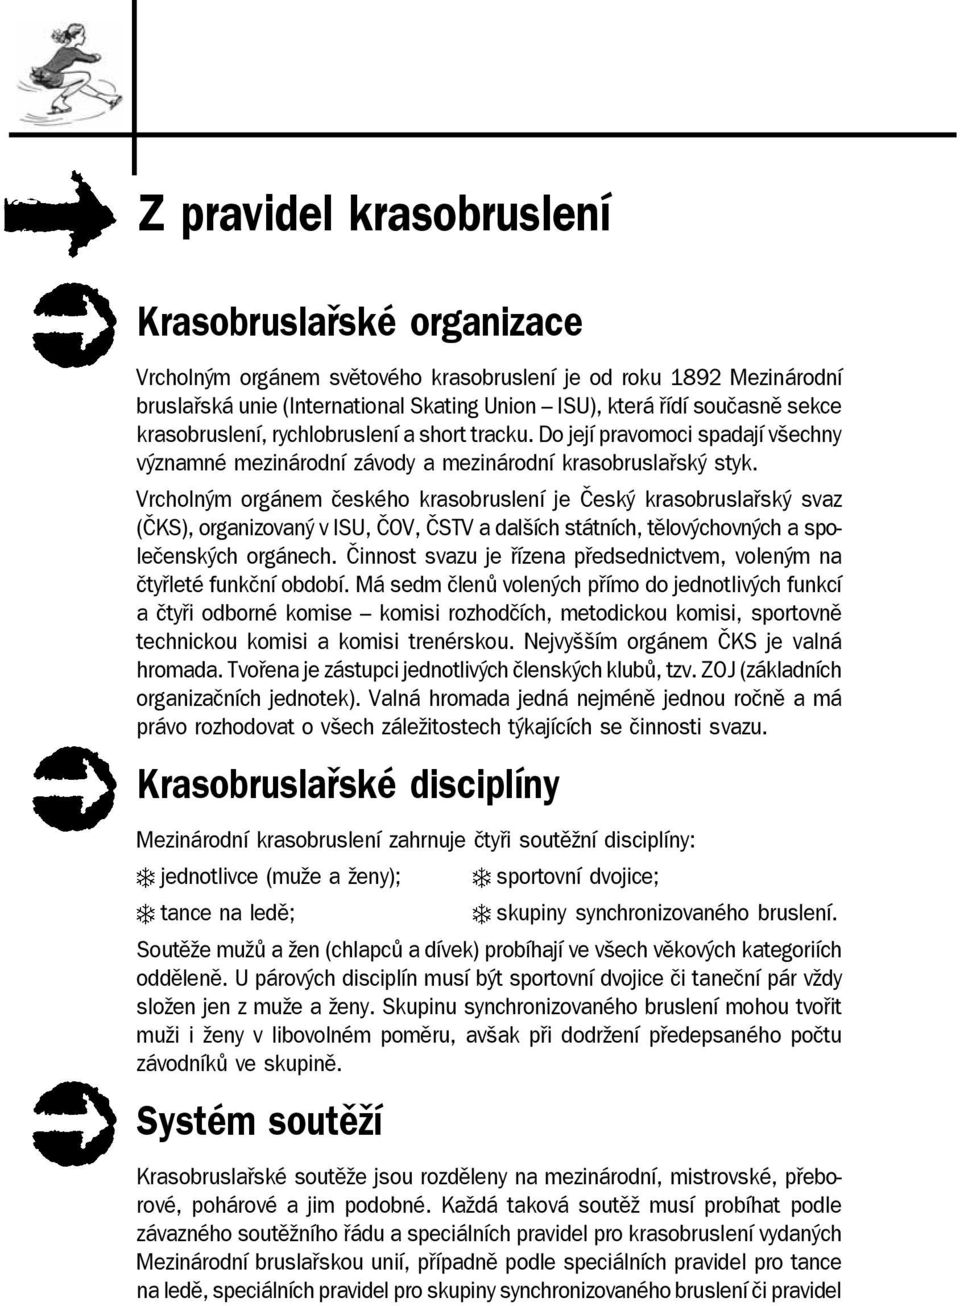 Vrcholným orgánem českého krasobruslení je Český krasobruslařský svaz (ČKS), organizovaný v ISU, ČOV, ČSTV a dalších státních, tělovýchovných a společenských orgánech.